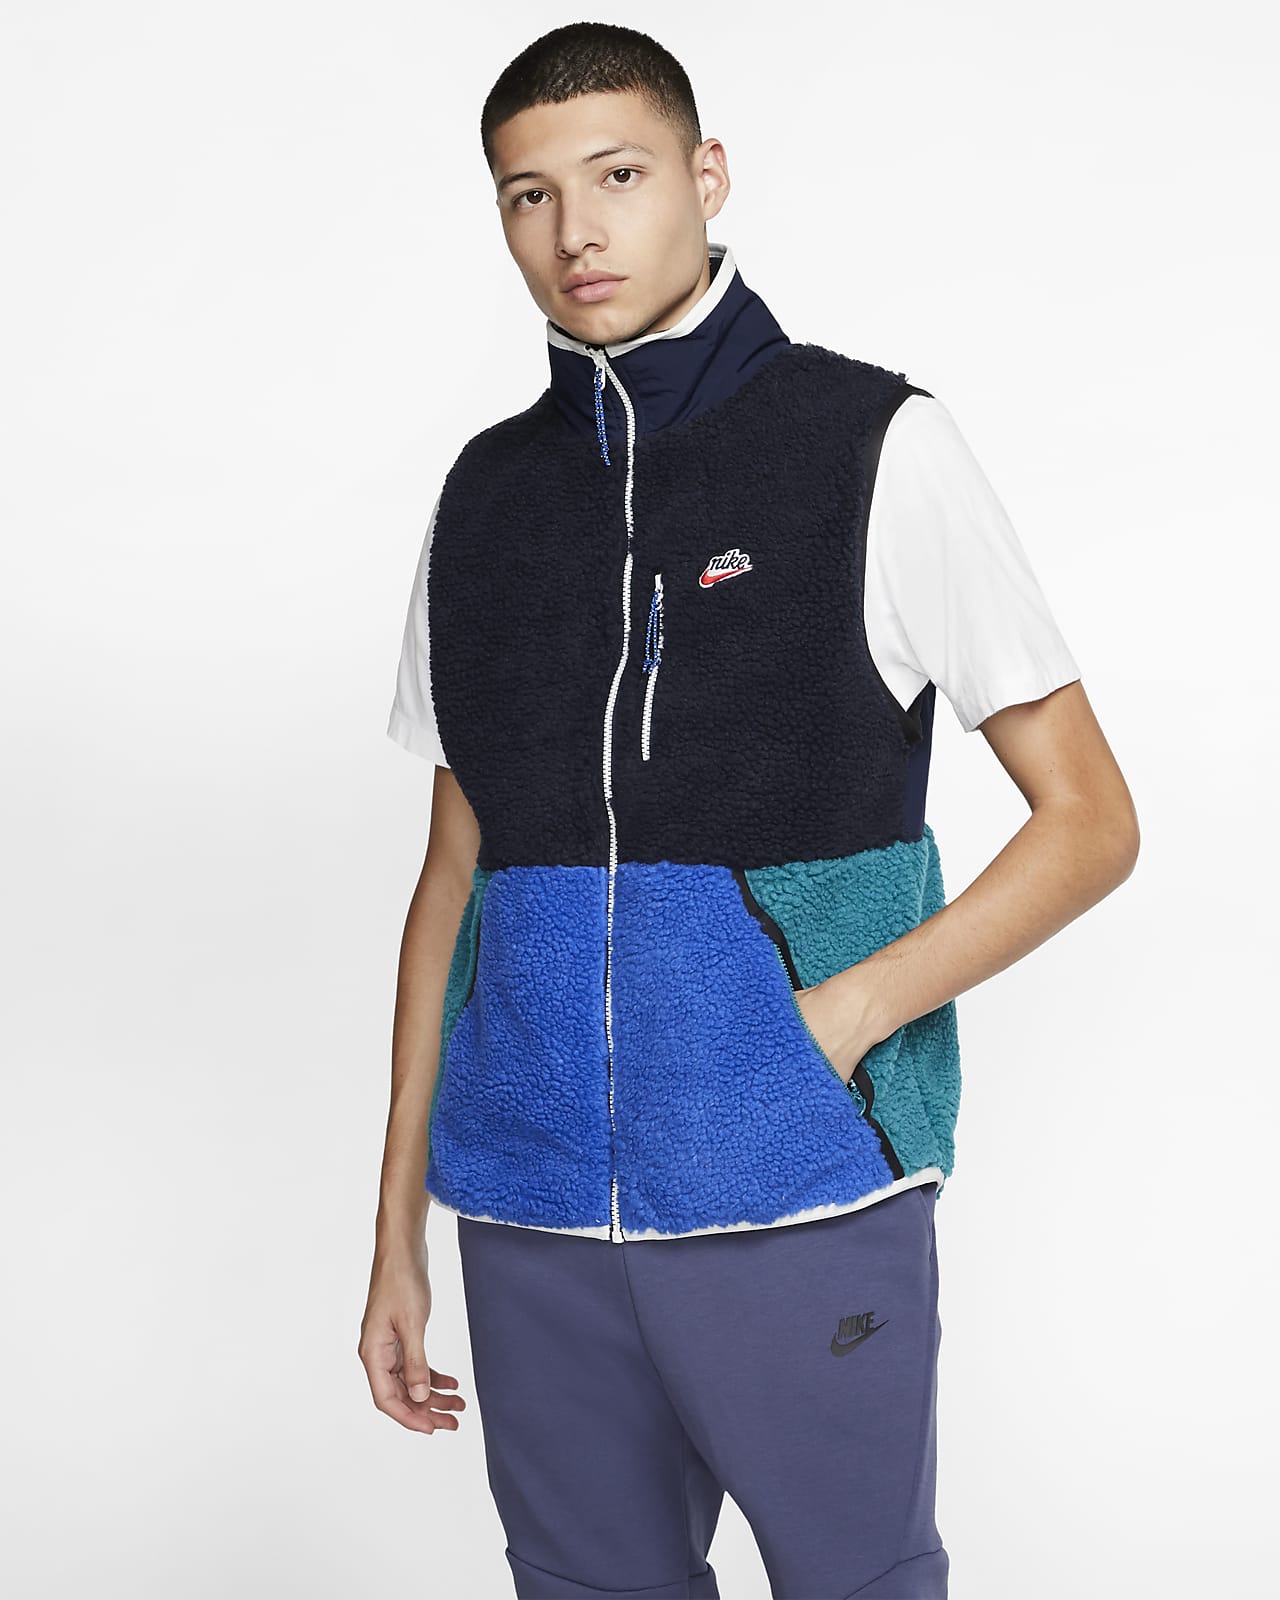 Nike Sportswear Men's Sherpa Fleece Gilet